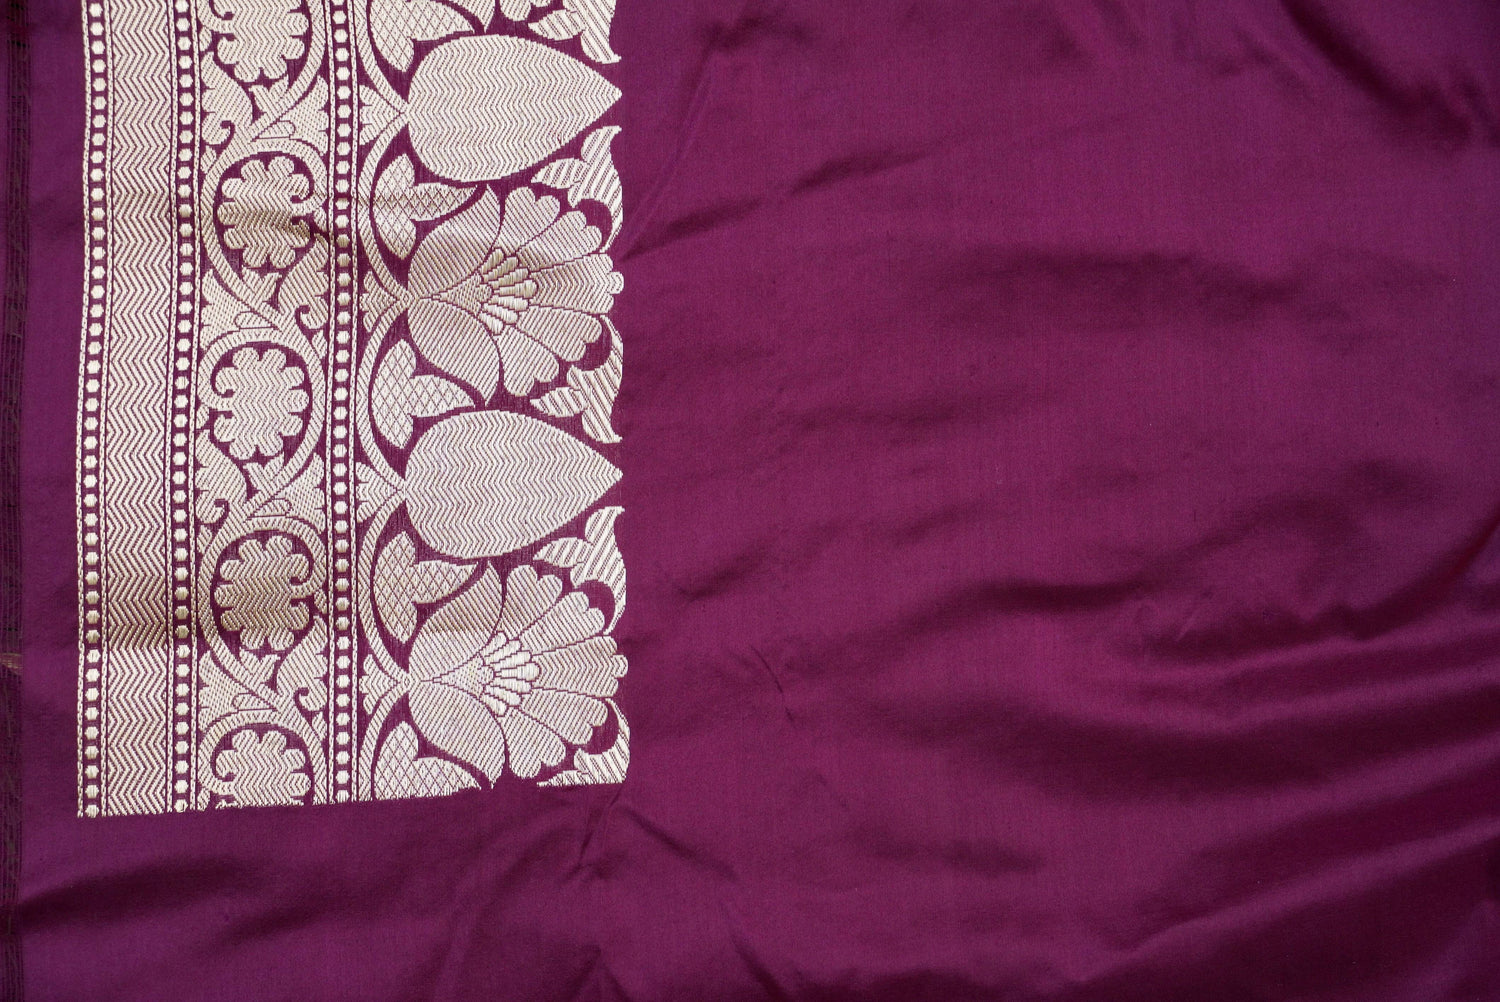 Handwoven Katan Silk Banarasi Fabric - 3 Piece